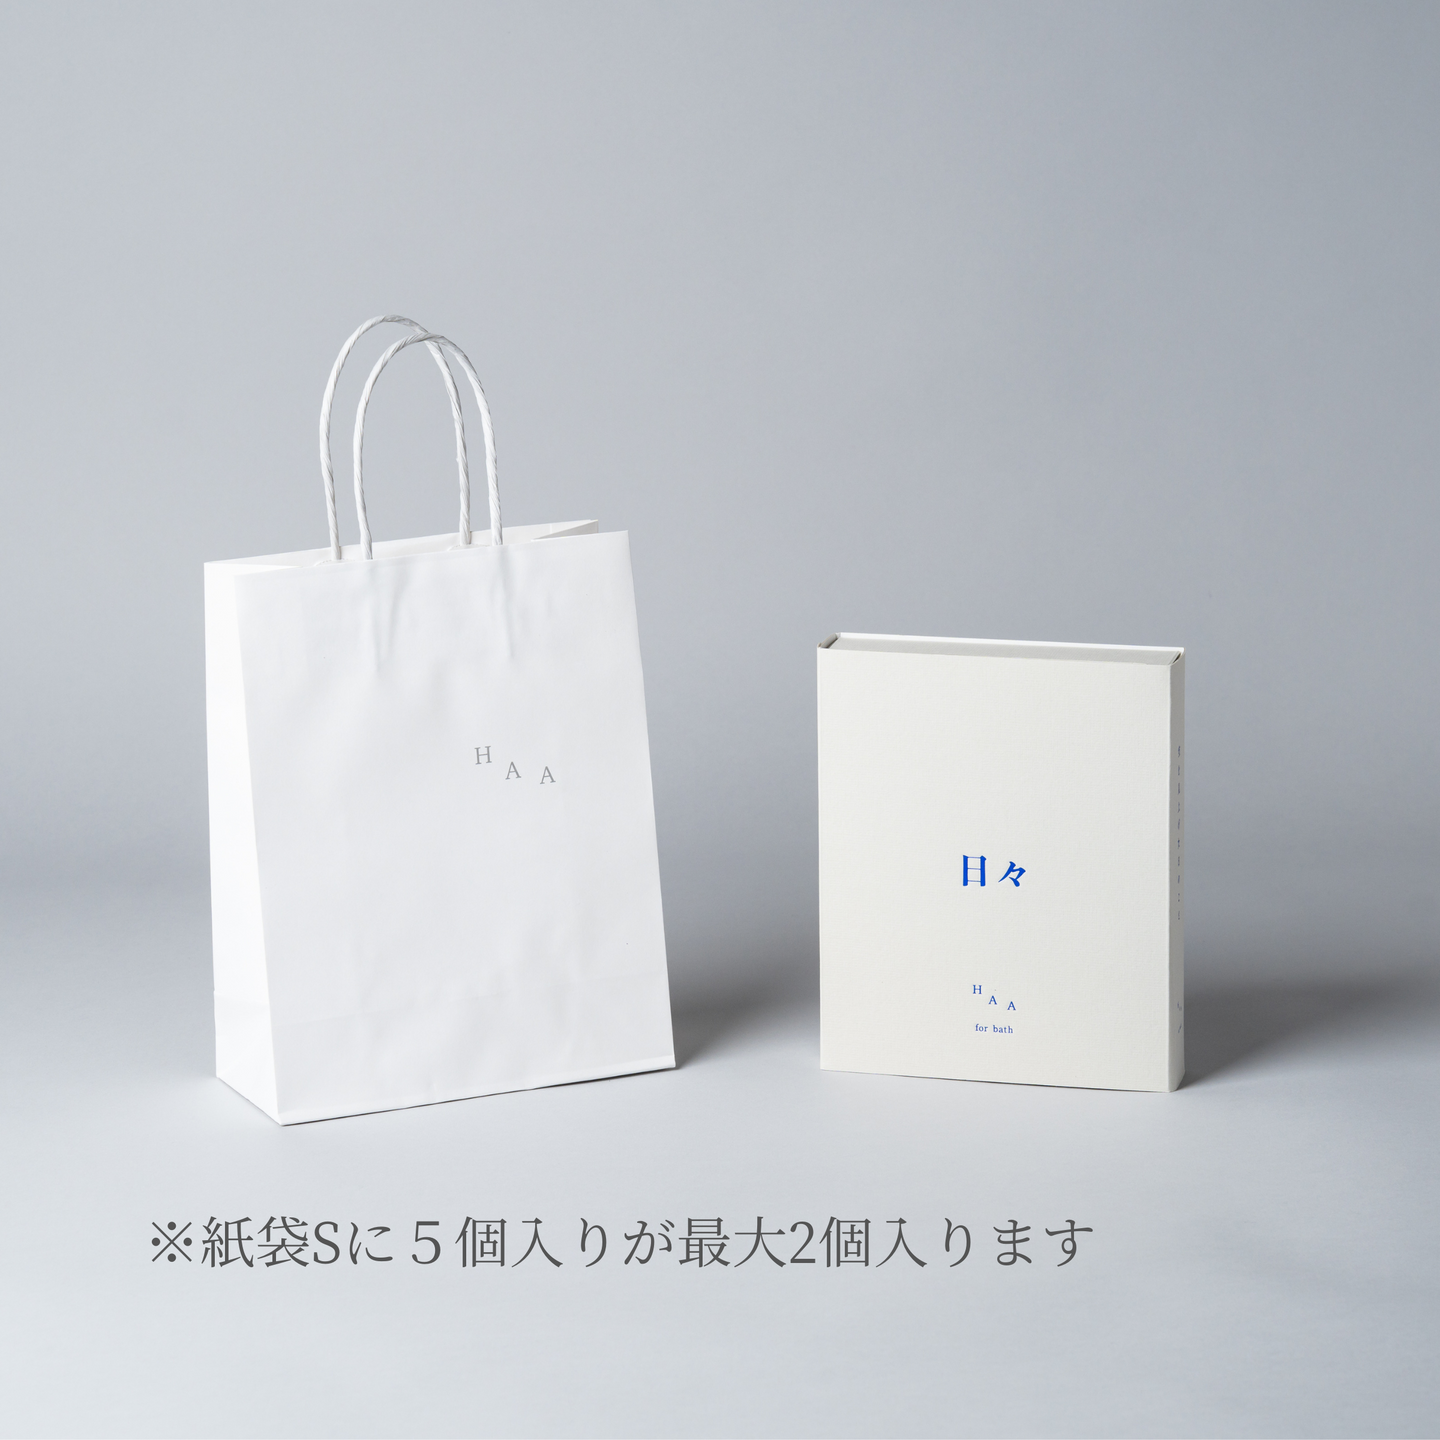 【官方網路商店限定】紙袋